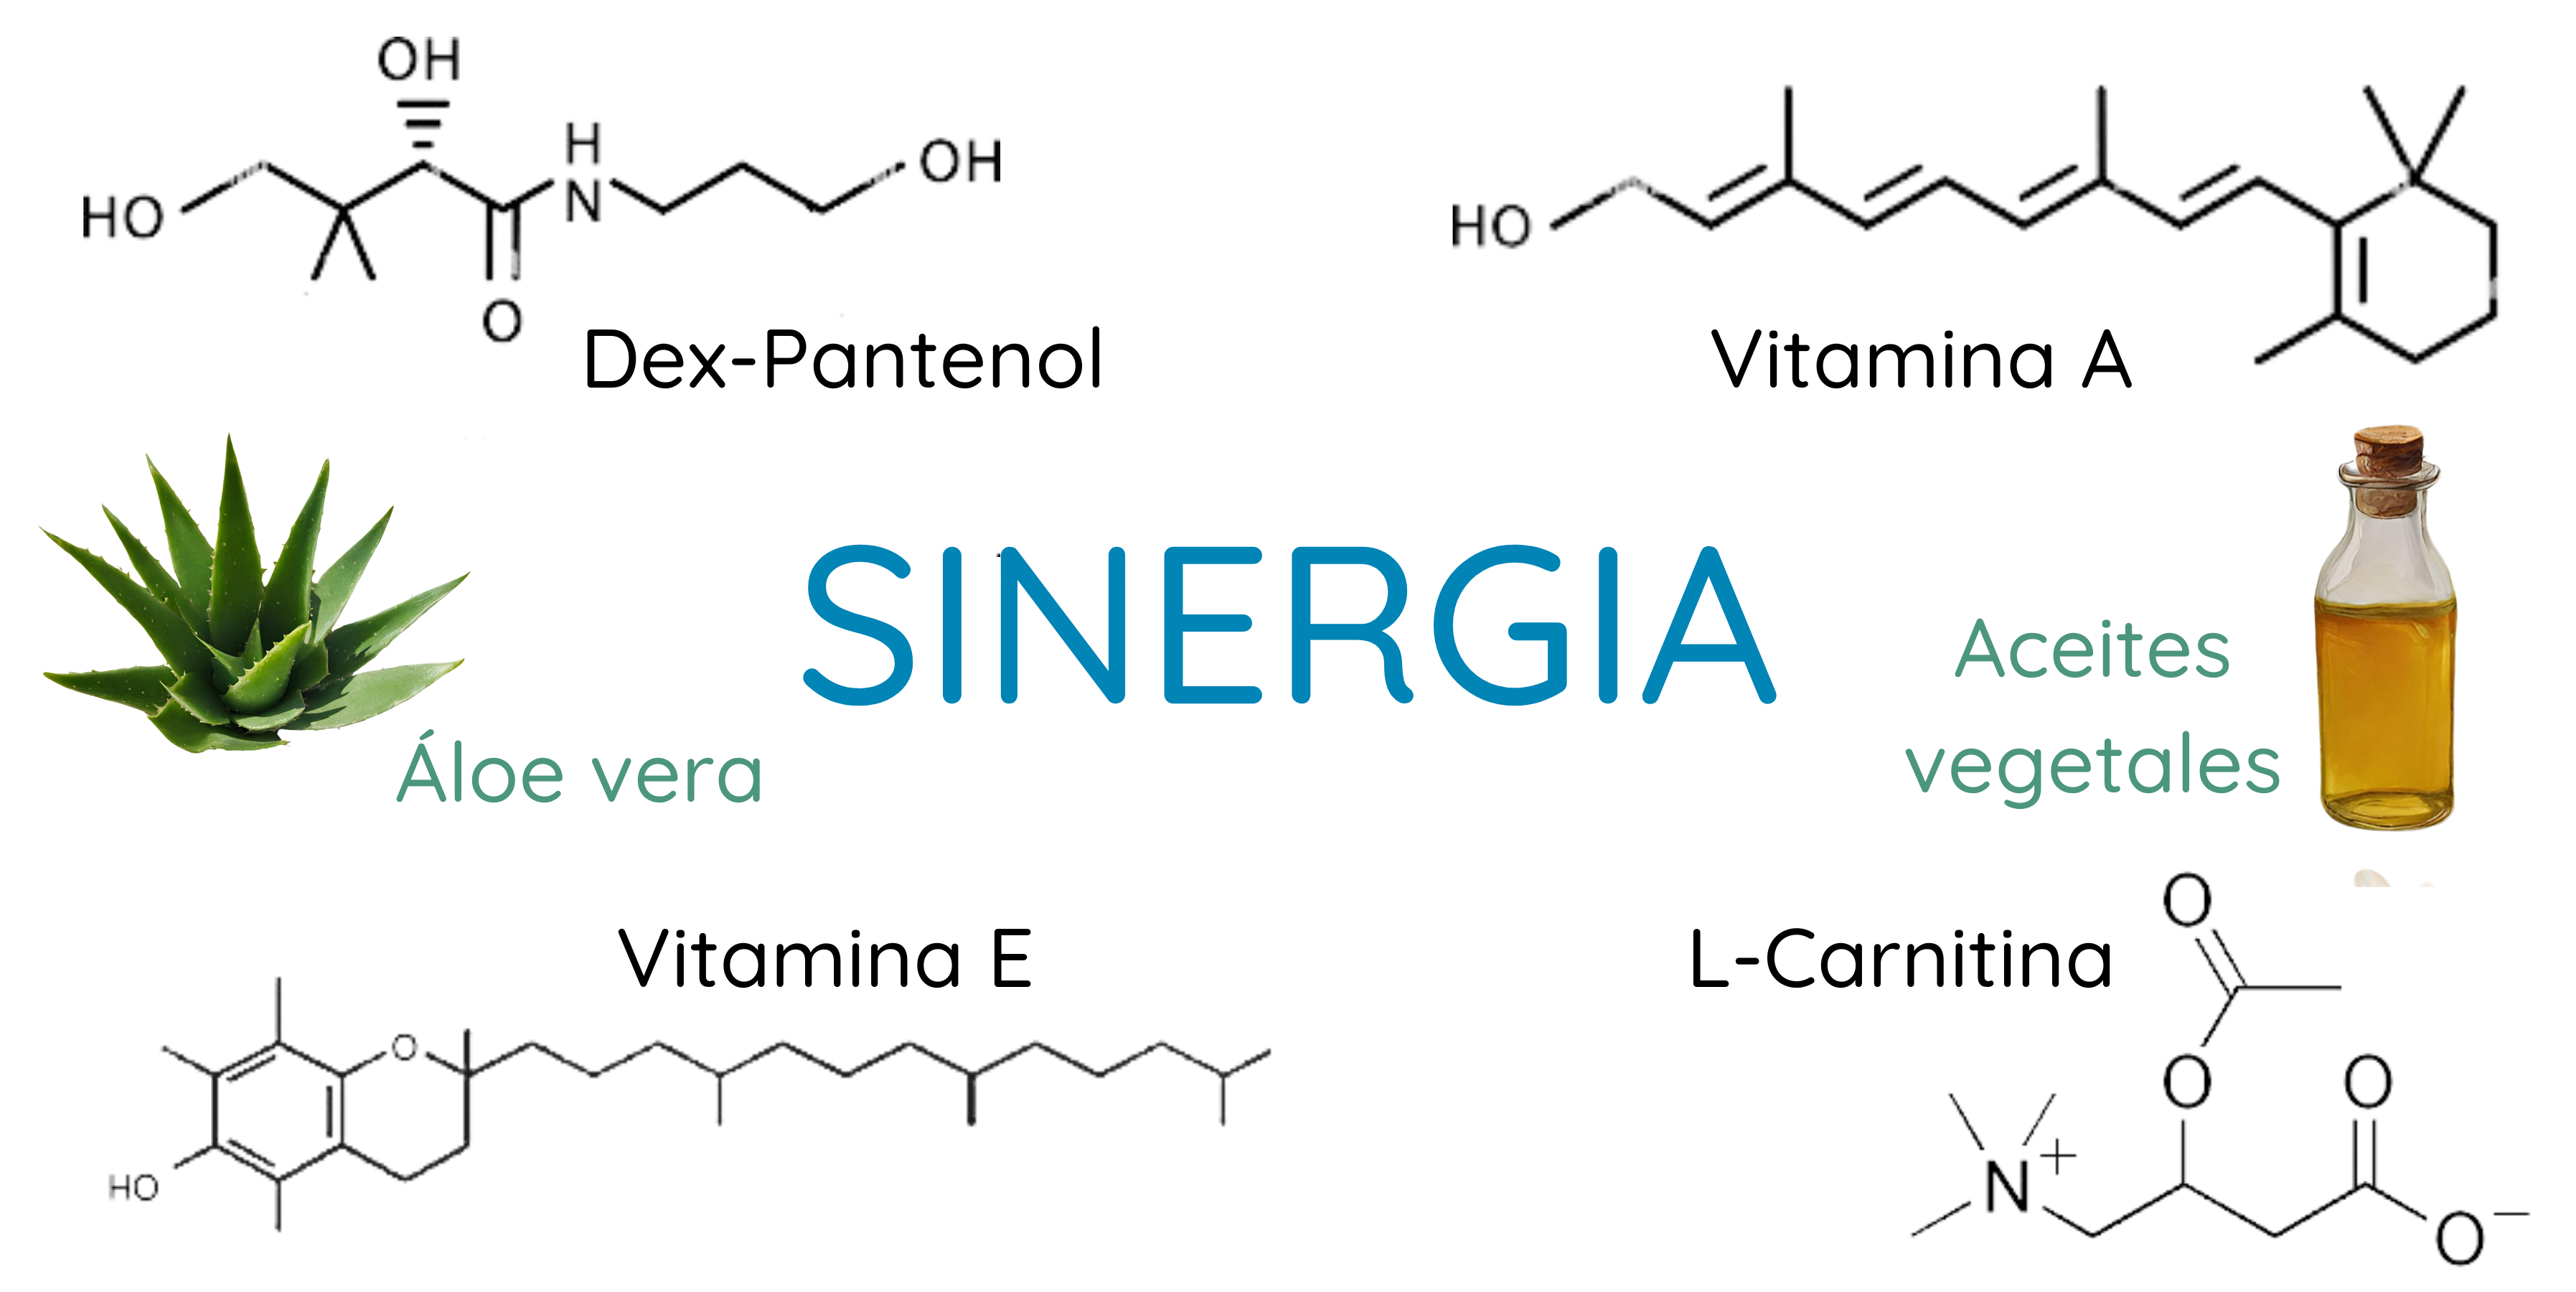 Sinergia para regenerar las pieles más castigadas: dex-pantenol, L-carnitina, aceites vegetales, áloe vera, vitamina A y E.